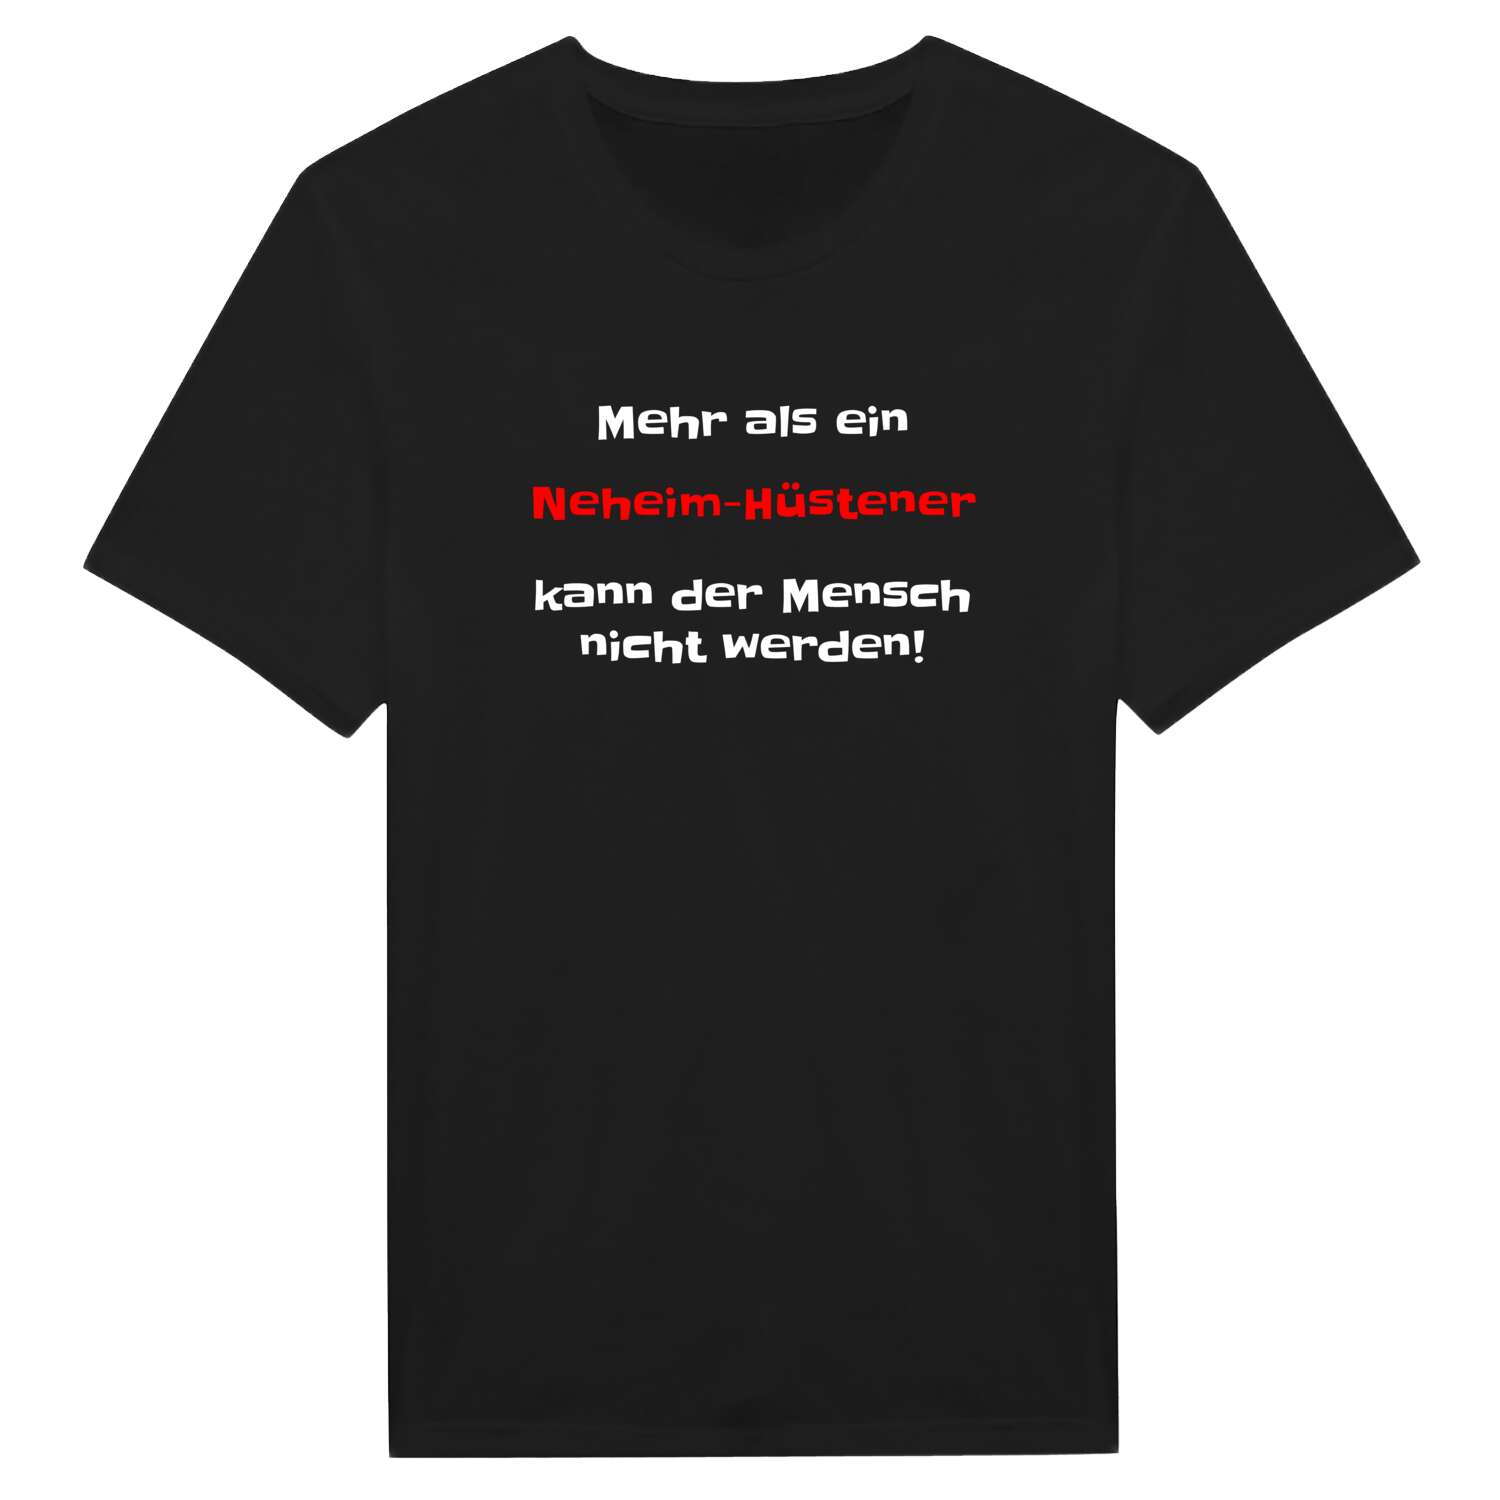 Neheim-Hüsten T-Shirt »Mehr als ein«